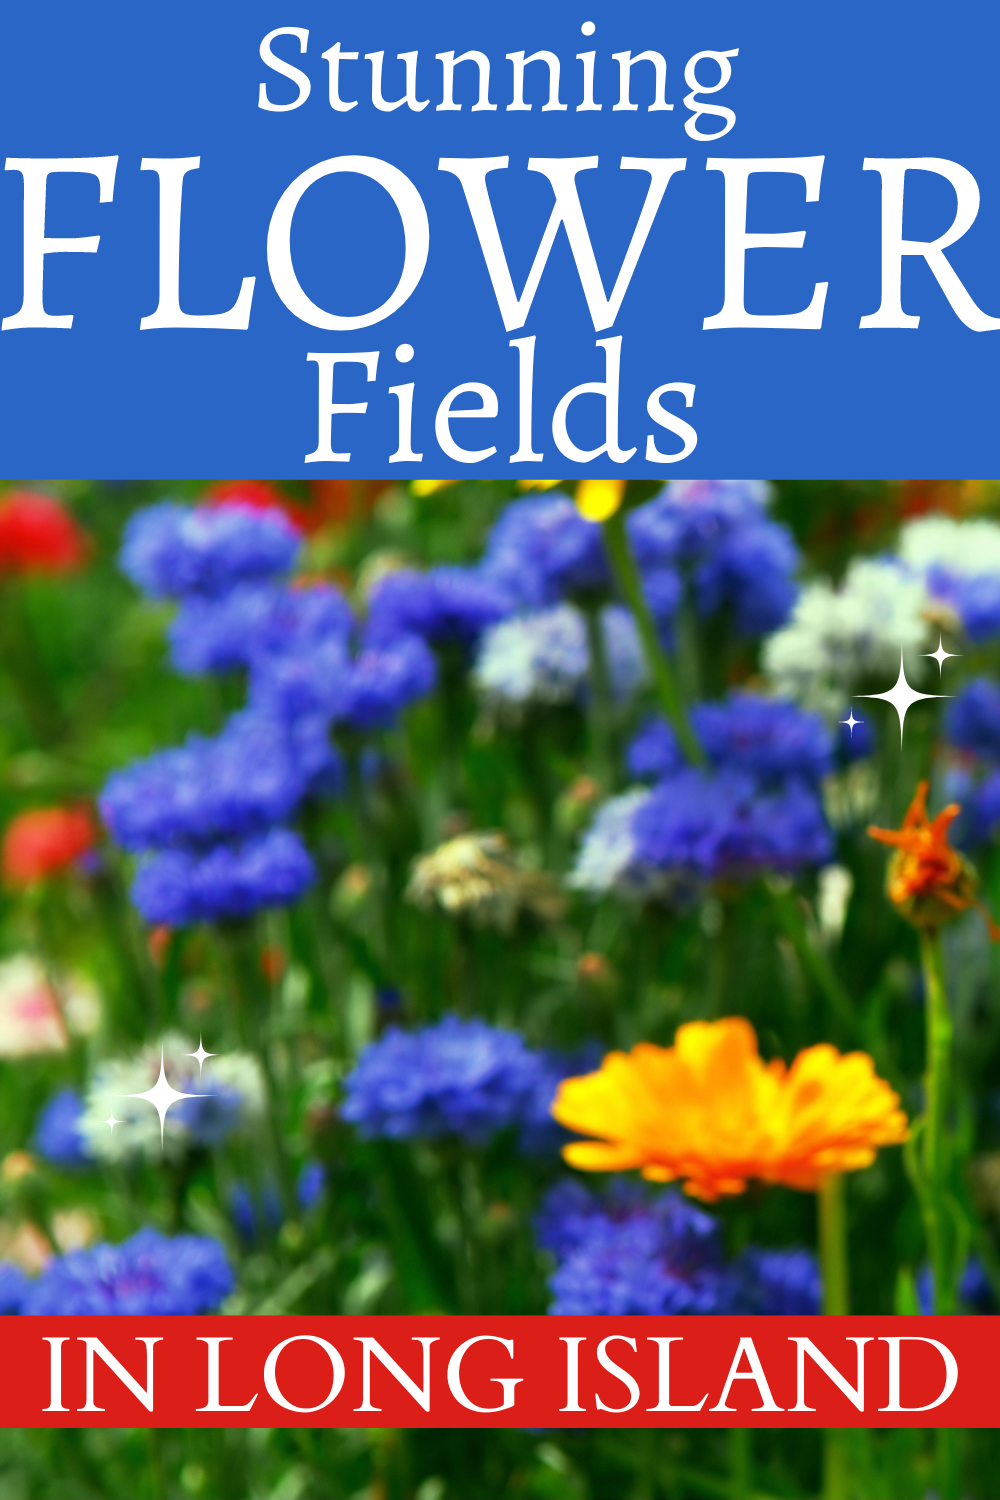 flower fields long island